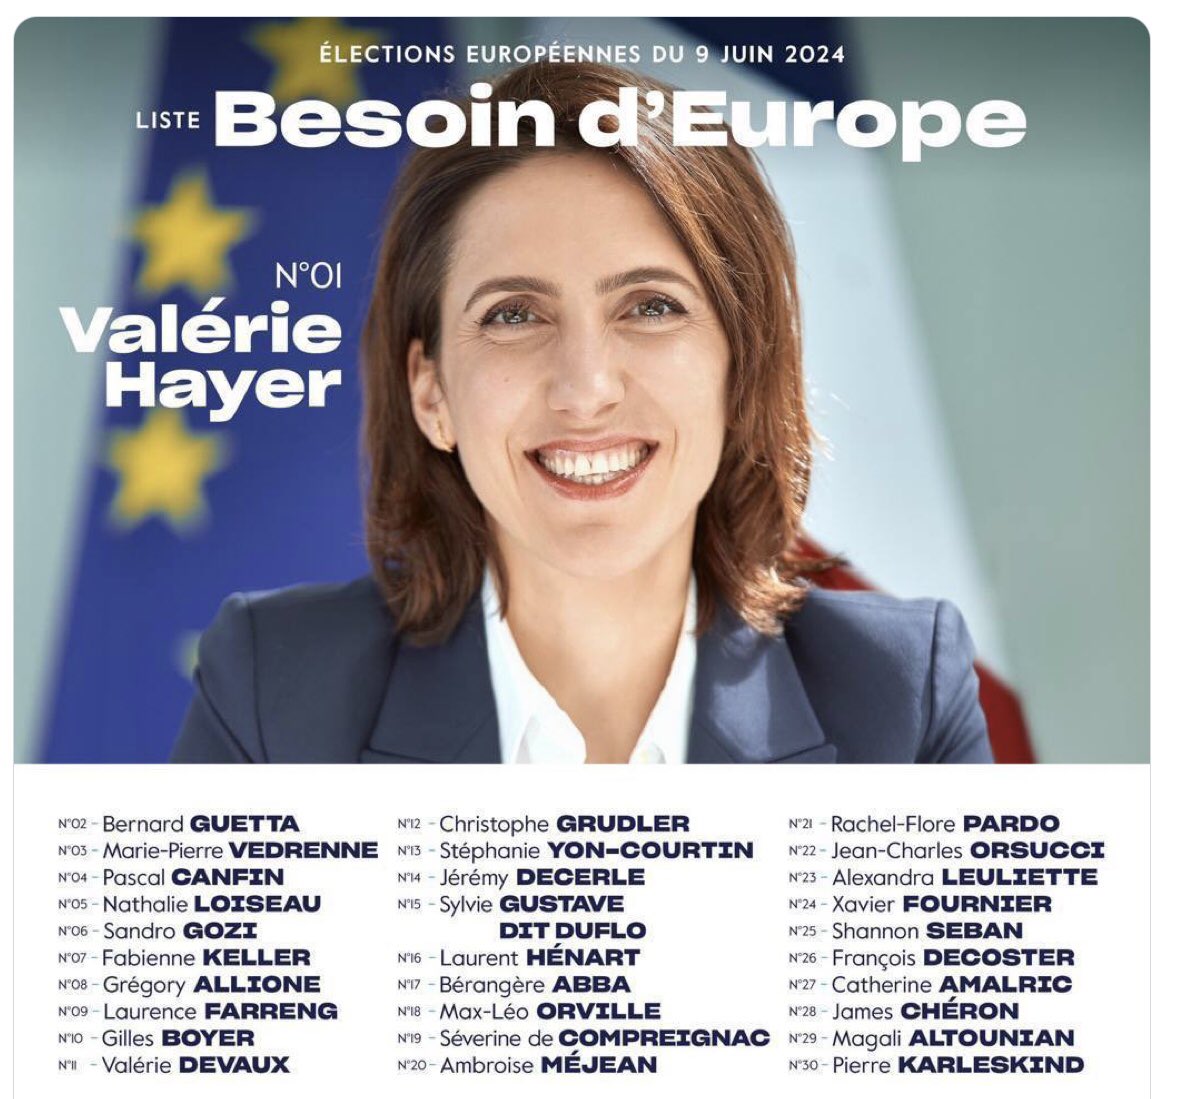 La fille de paysan, Valérie Hayer, qui s’acoquine avec le fossoyeur des paysans, Pascal Canfin, ses ancêtres doivent se retourner dans leurs tombes. #Europeennes2024 #Macron #Cnews #hdpros